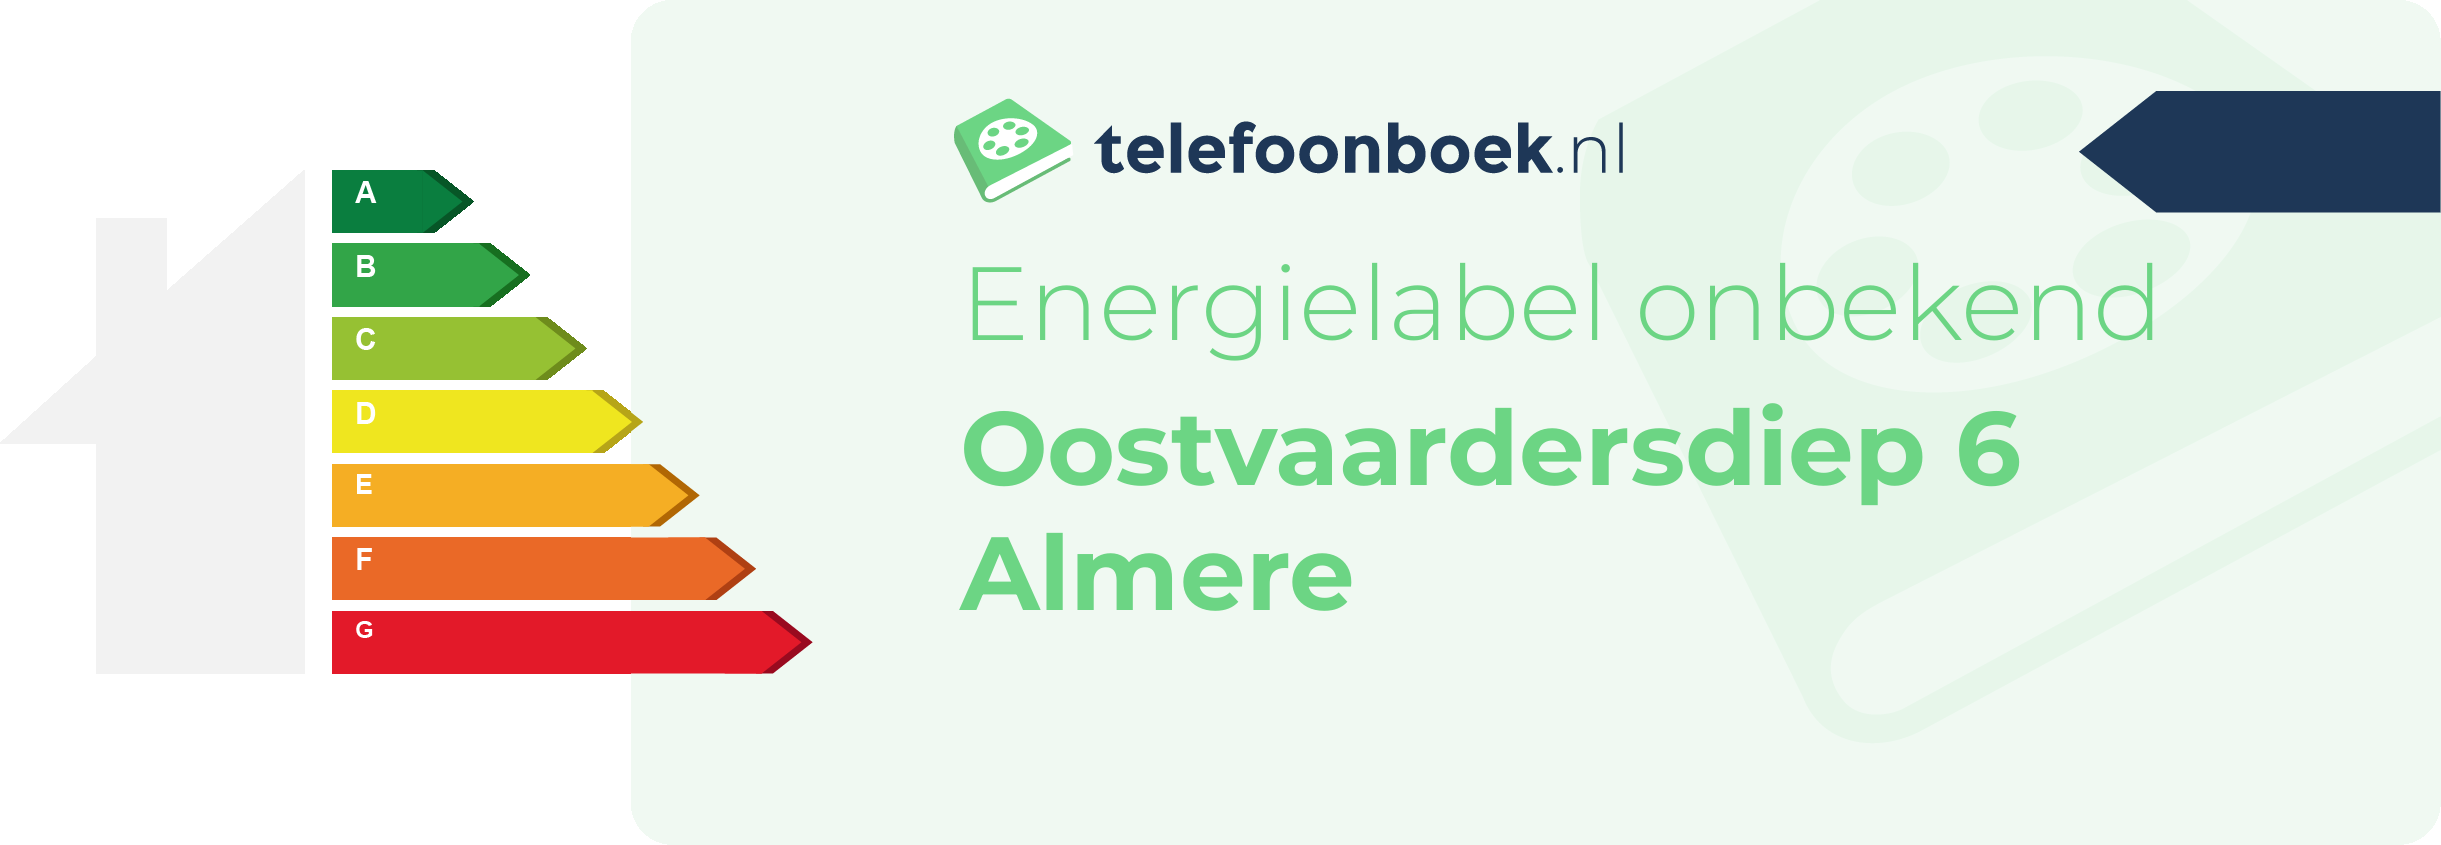 Energielabel Oostvaardersdiep 6 Almere